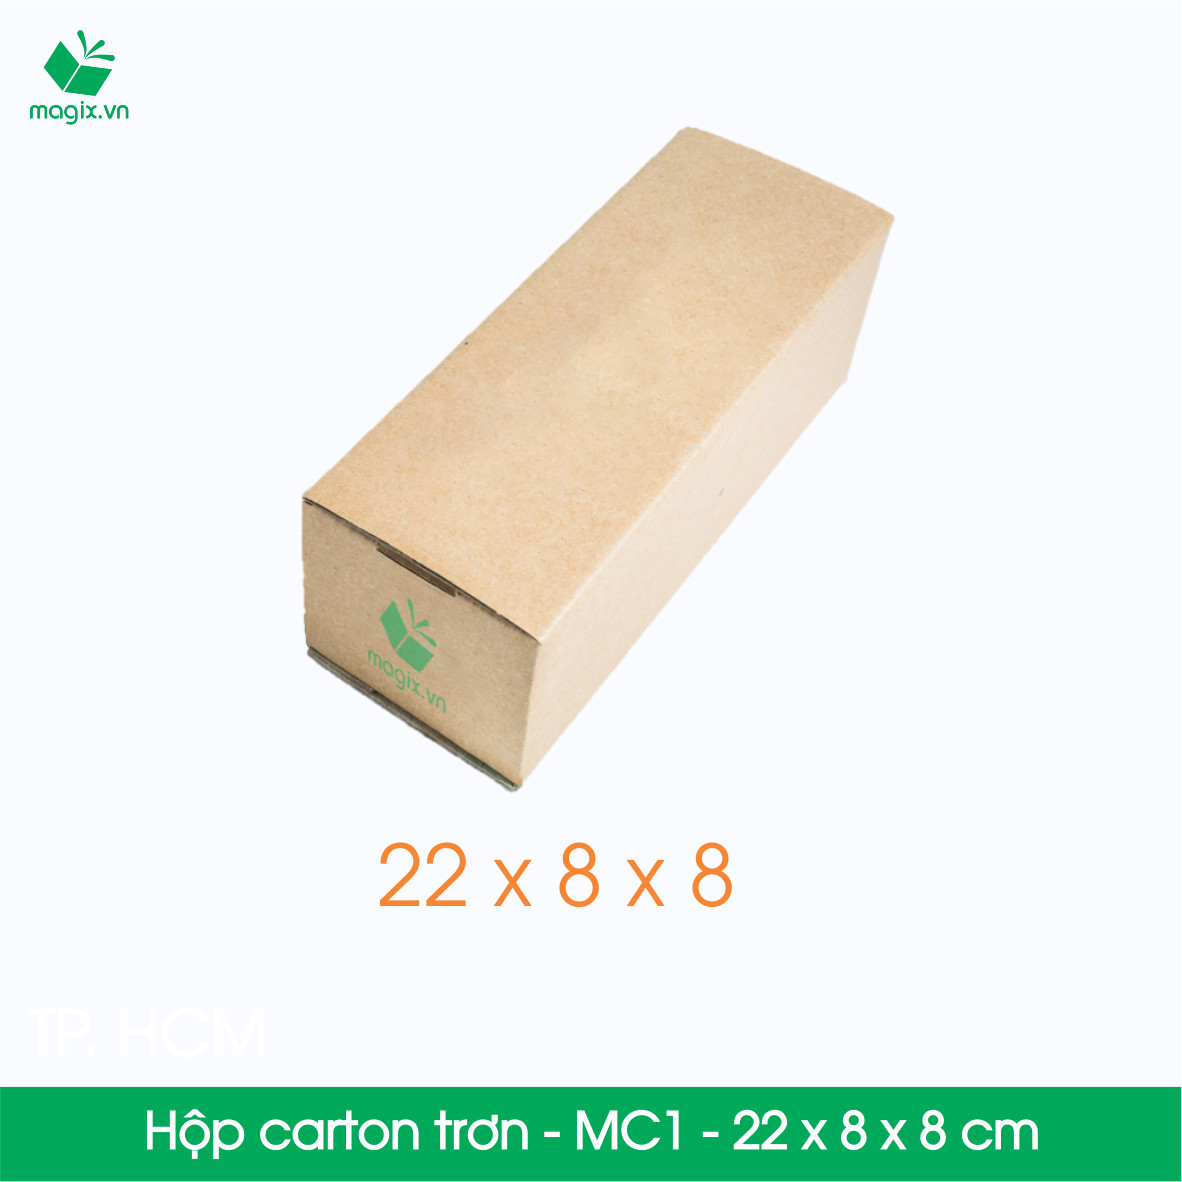 MC1 - 22x8x8 cm - 100 Thùng hộp carton trơn đóng hàng